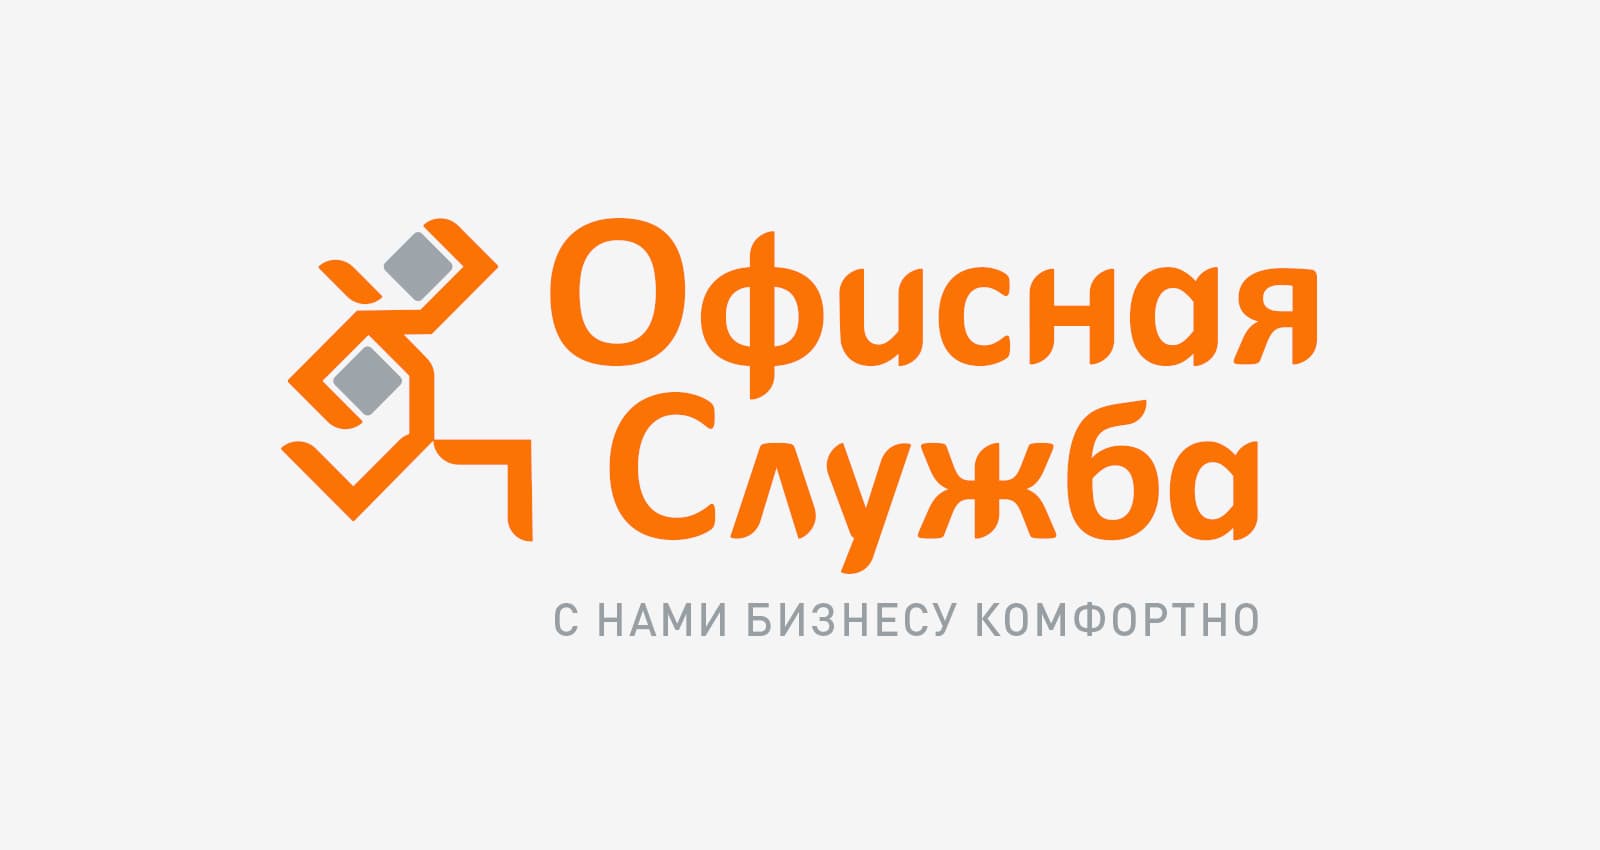 Разработка дизайна логотипа и фирменного стиля для компании «Офисная Служба»